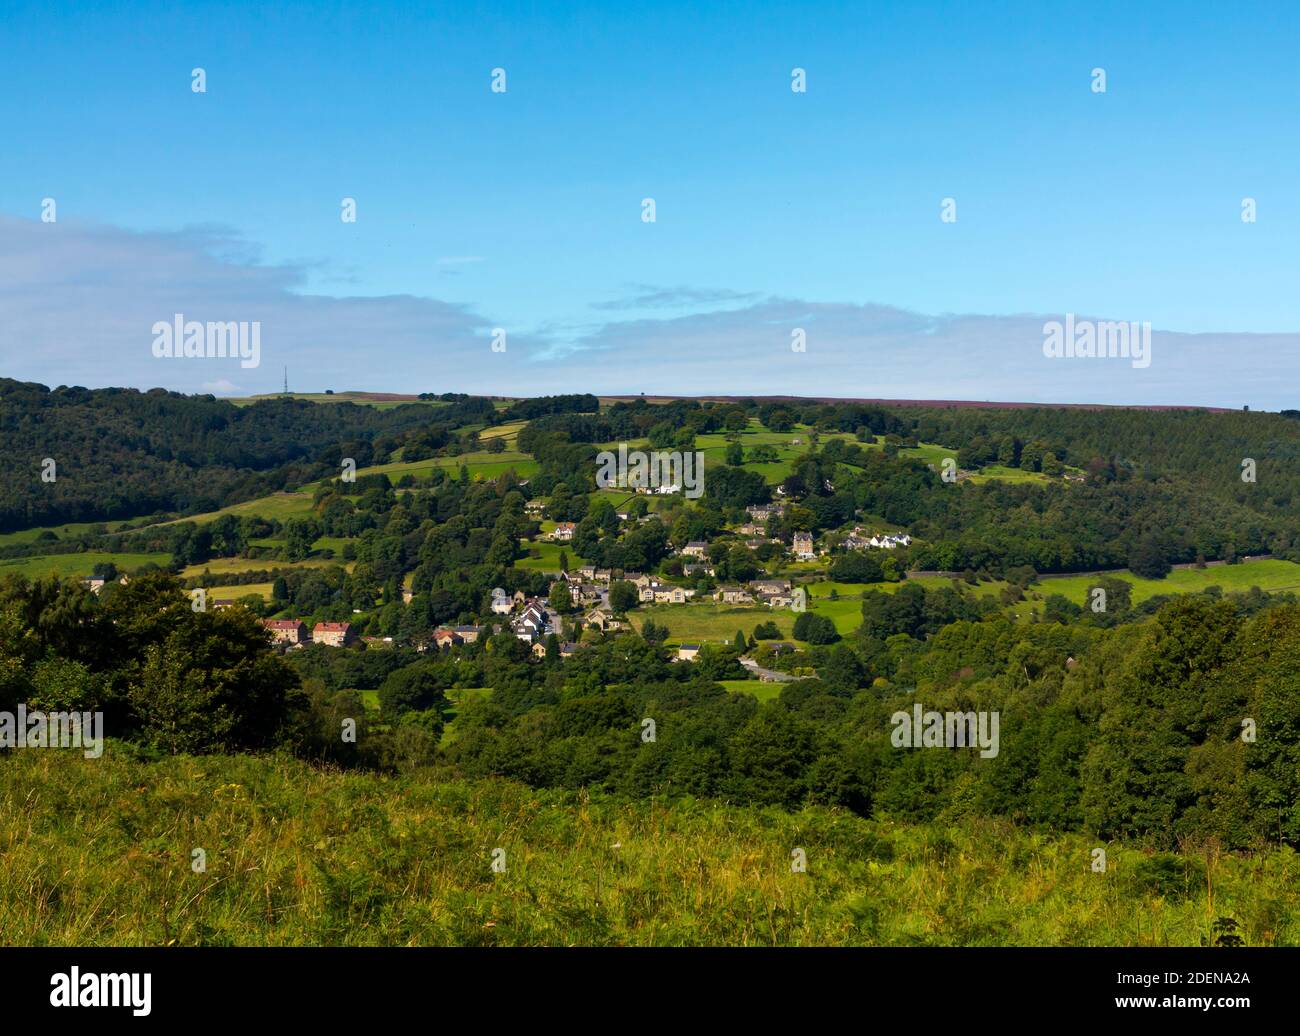 Vue sur le village de Grindleford et la campagne environnante depuis Froggatt Edge Dans le parc national de Peak District Derbyshire Angleterre Royaume-Uni Banque D'Images